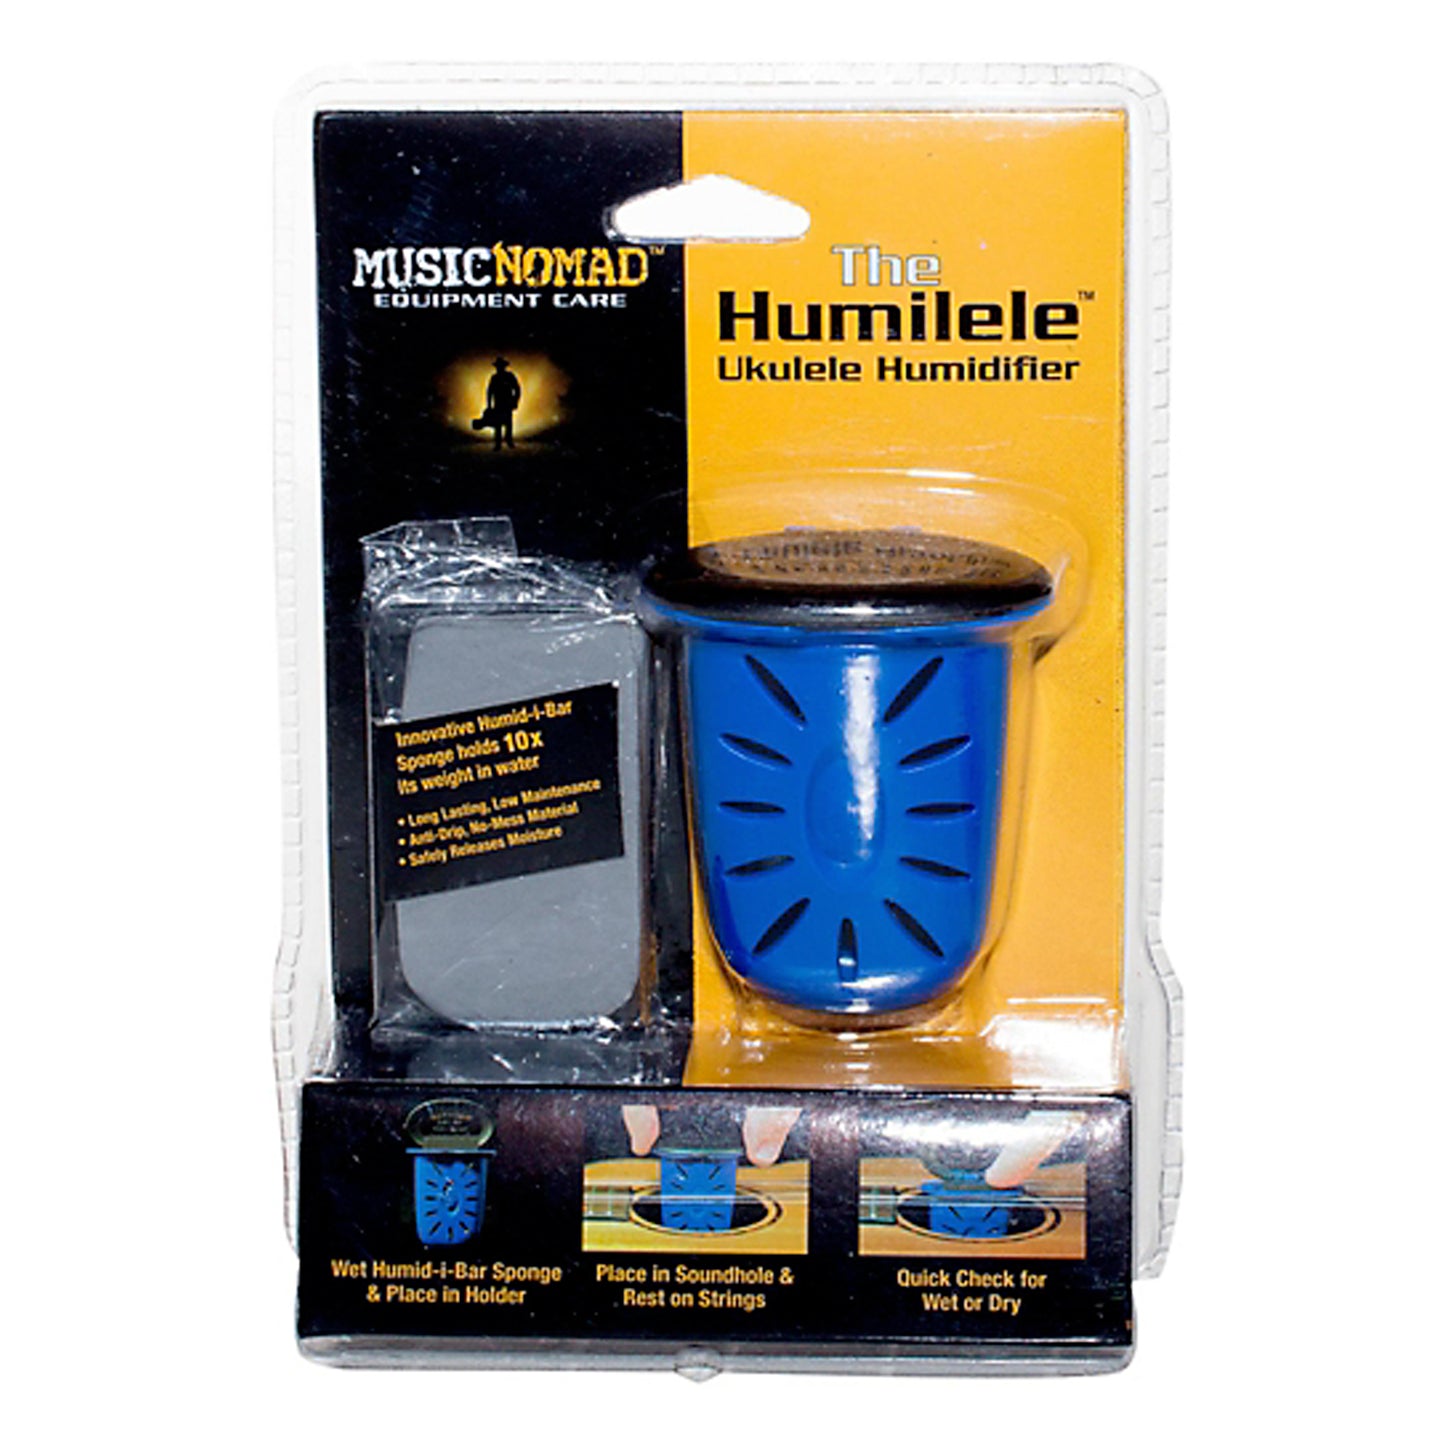 Music Nomad MN302 Humilele Ukulele Humidifier